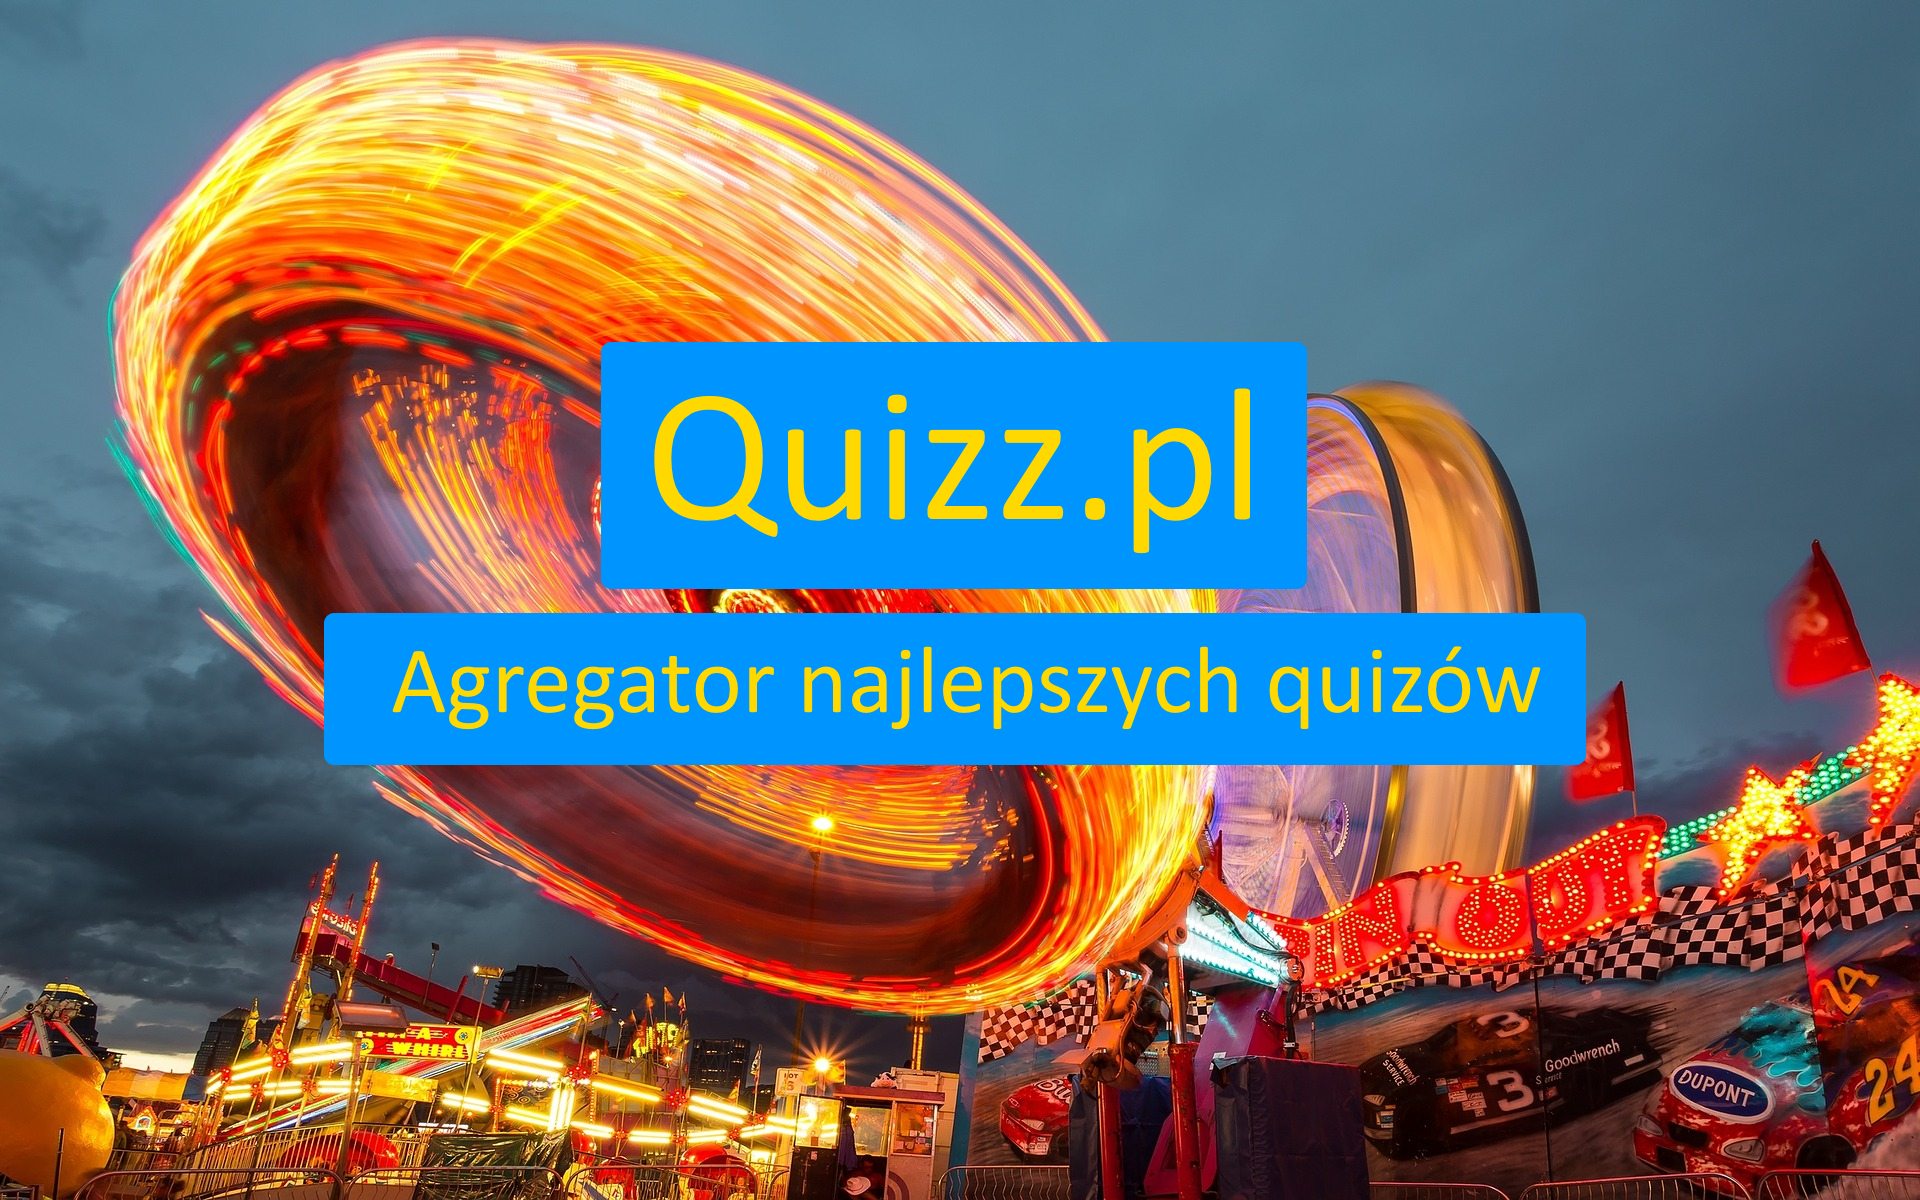 Zdrowi i uroda - bezpłatne quizy, testy wiedzy i ankiety - www.quizz.pl